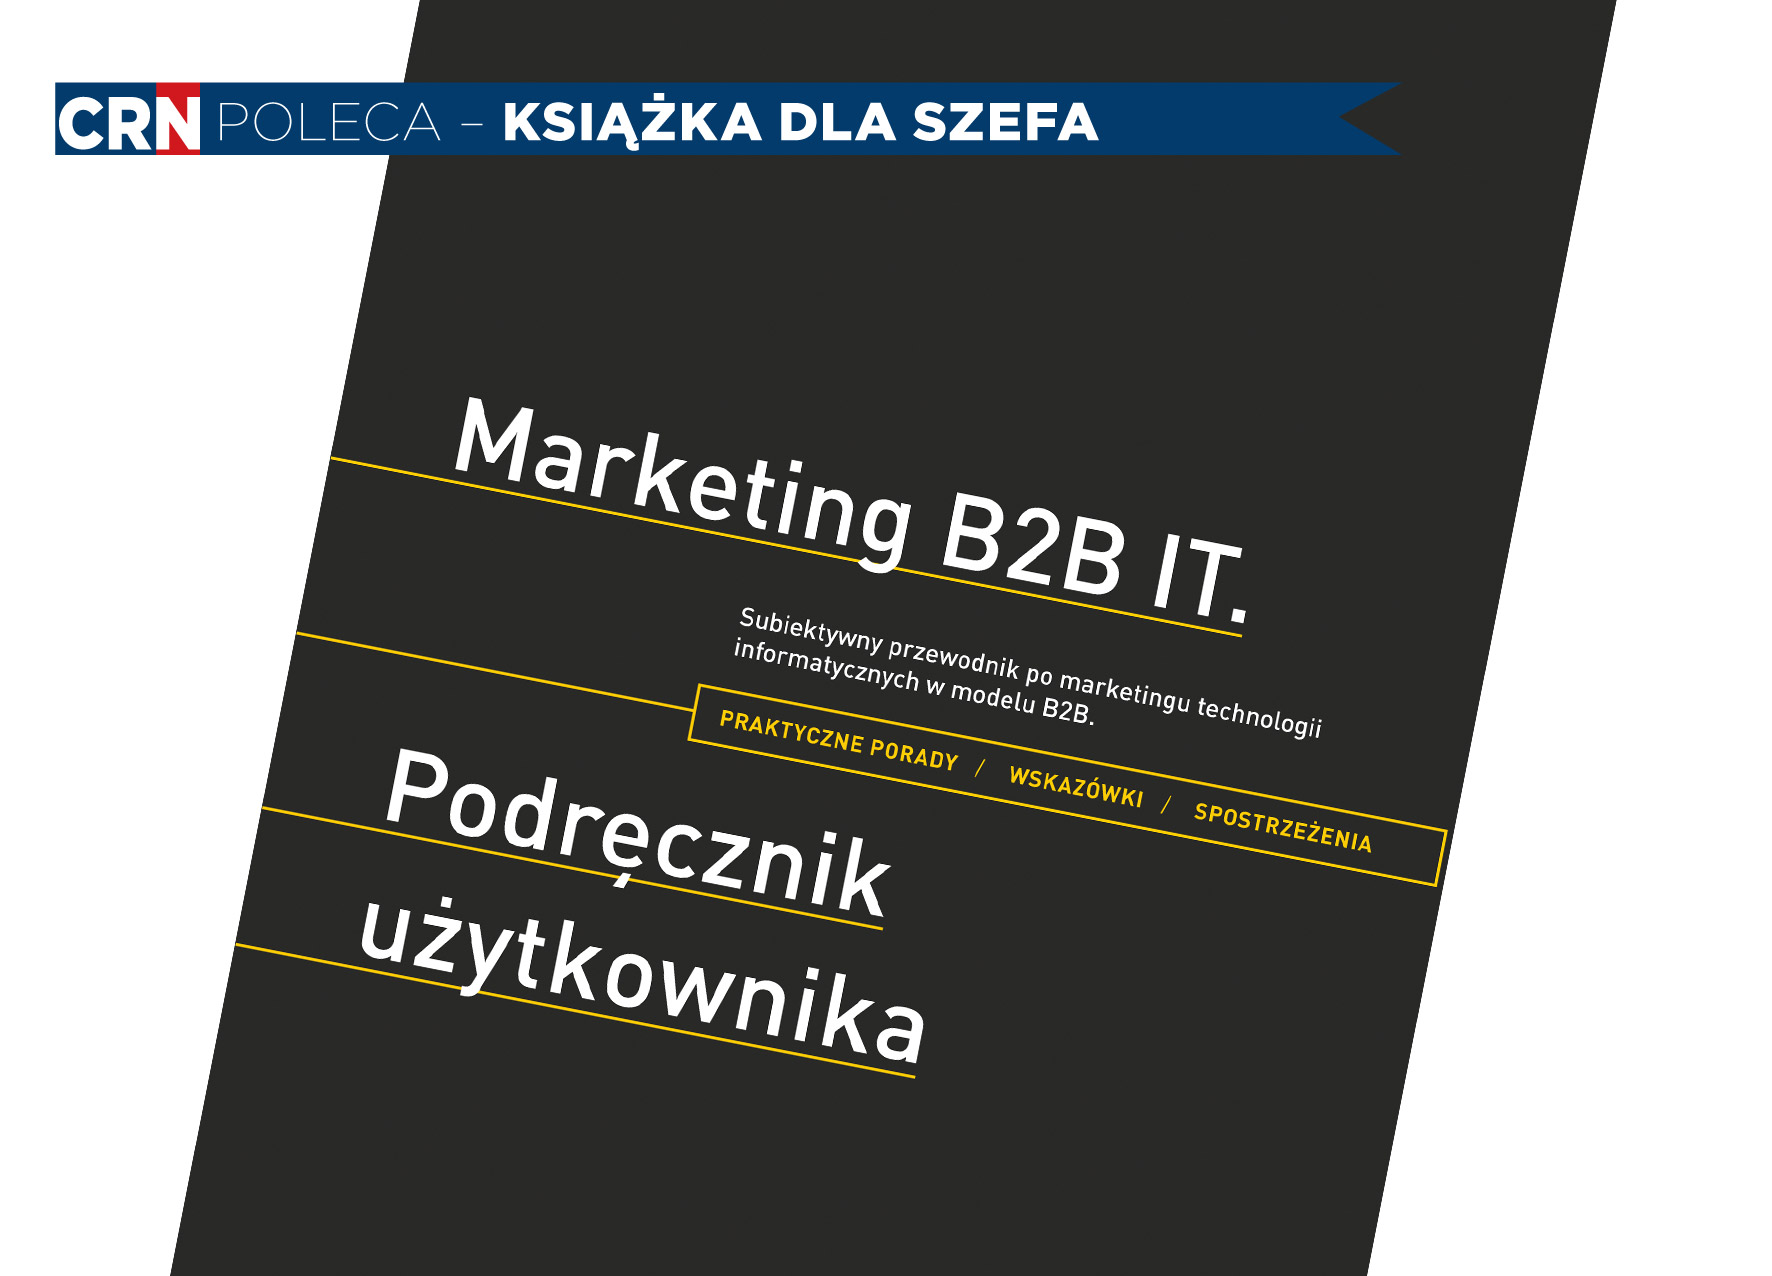 „Marketing B2B IT. Podręcznik użytkownika”